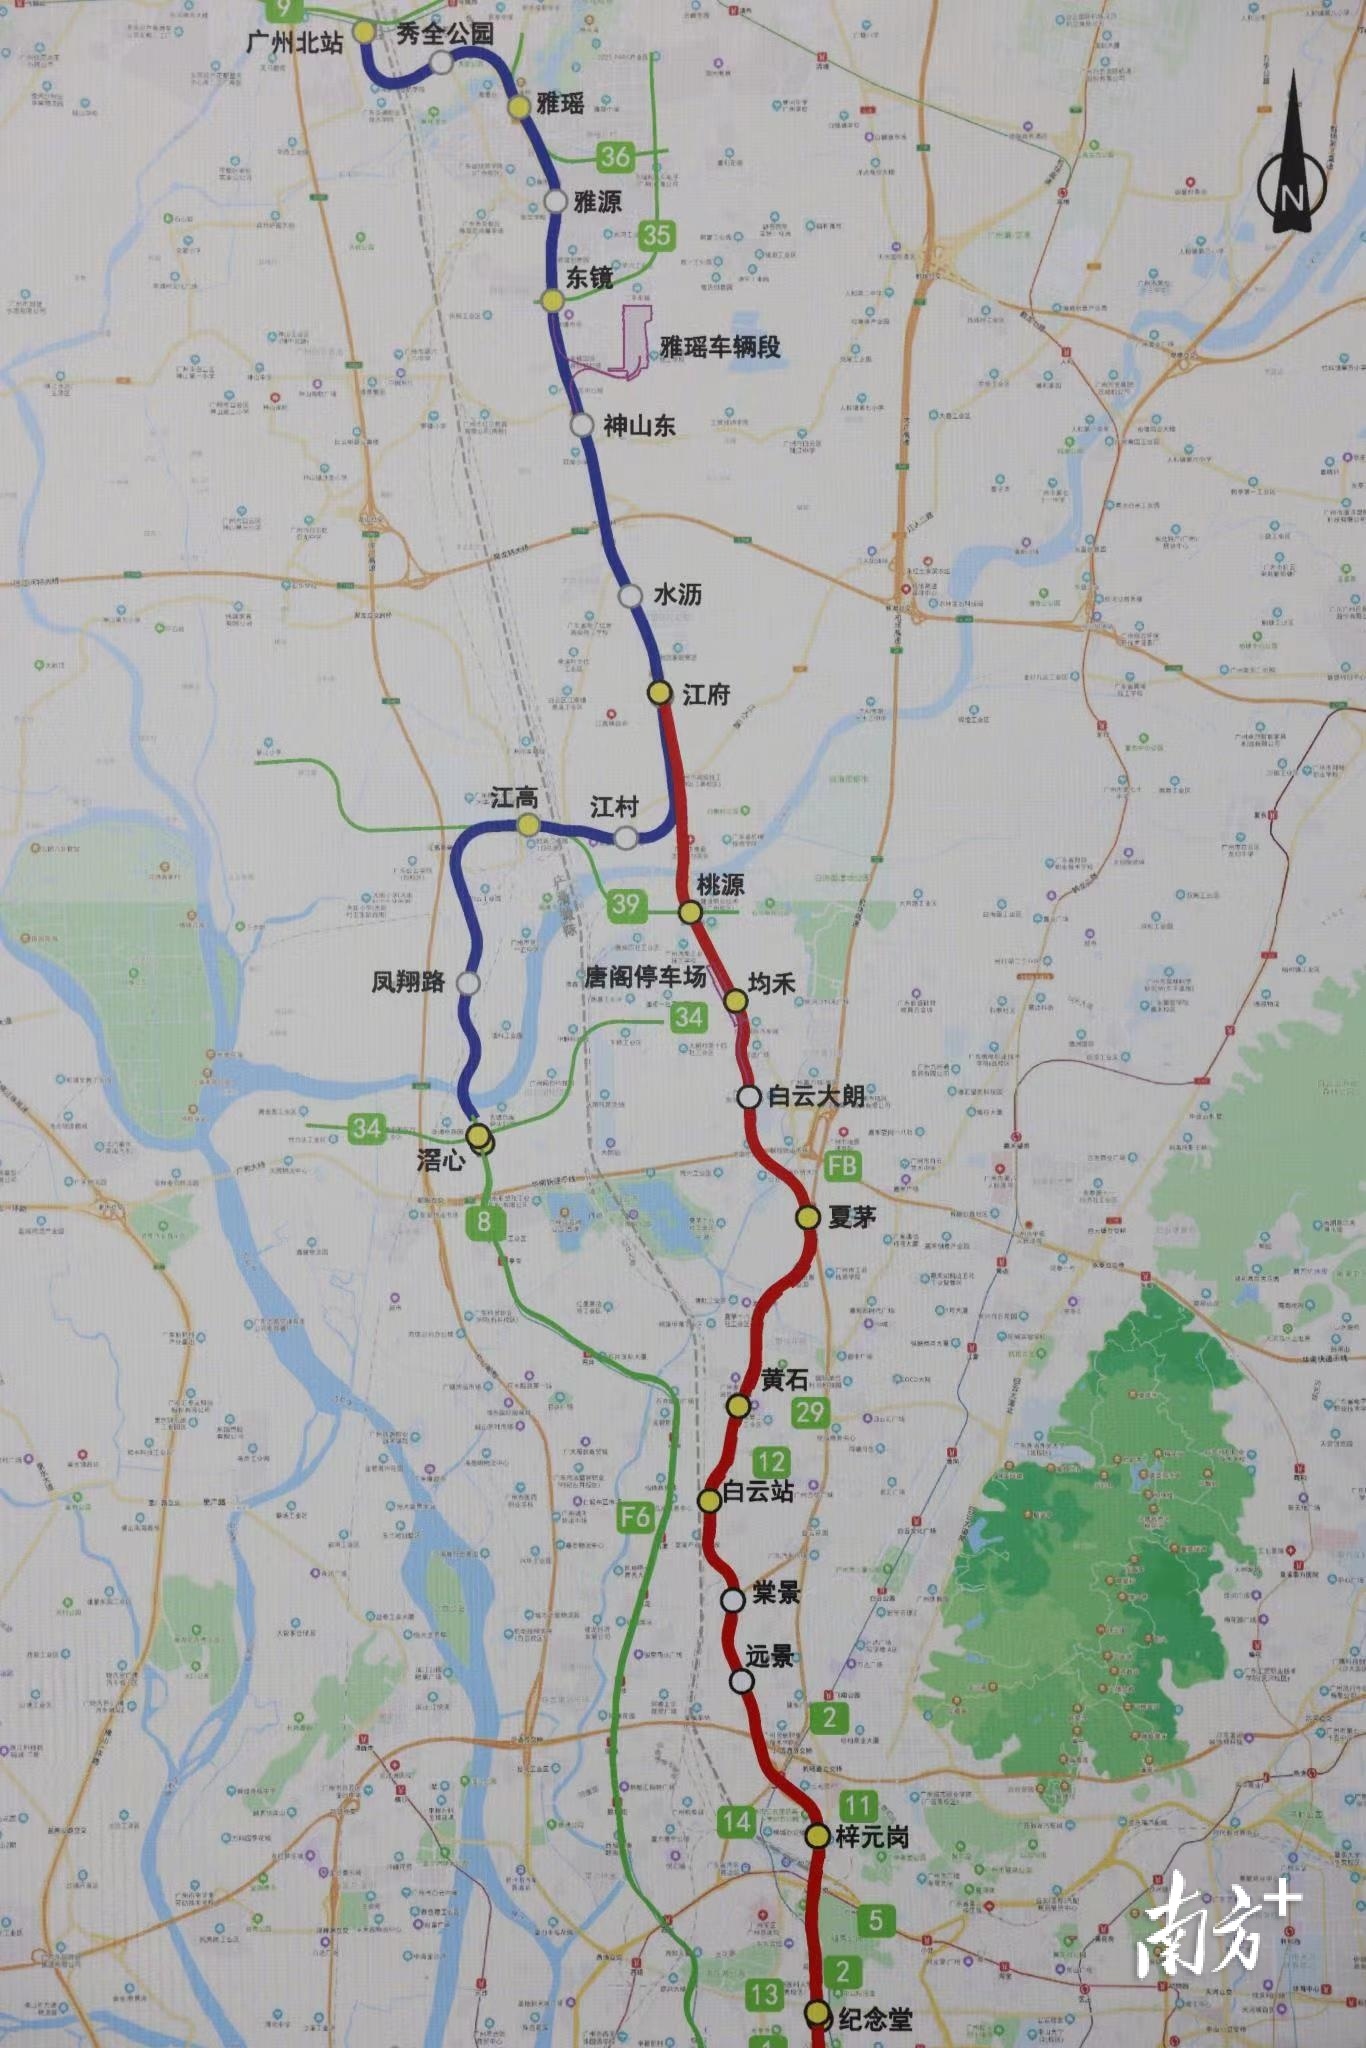 城市中轴北拓广州地铁八号线北延段及支线工程开工